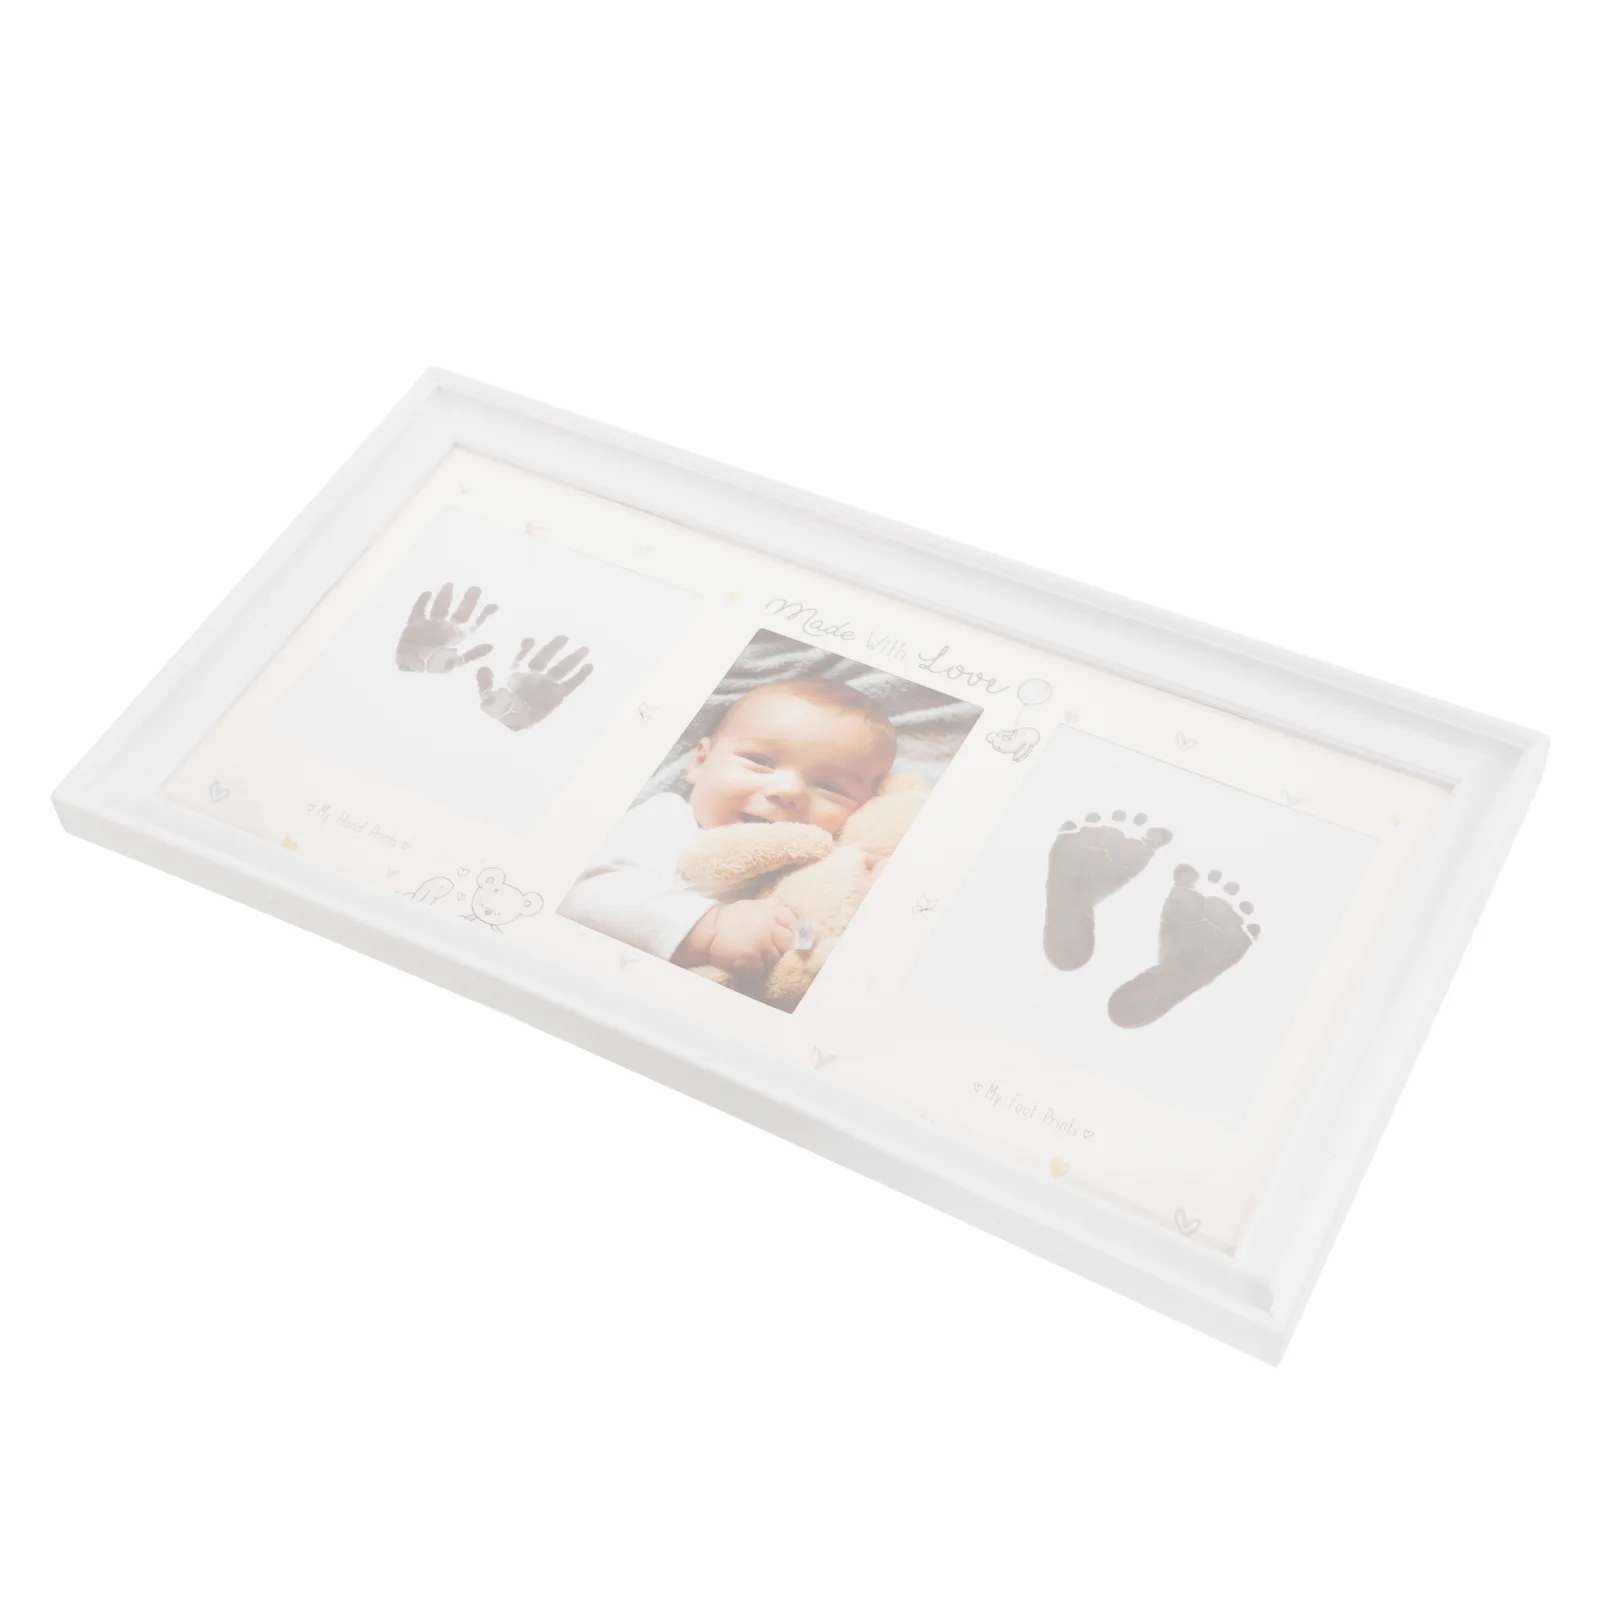 Новородено Handprint фото рамка бебе отпечатък картина рамка бебе спомен фото рамка с мастило тампон